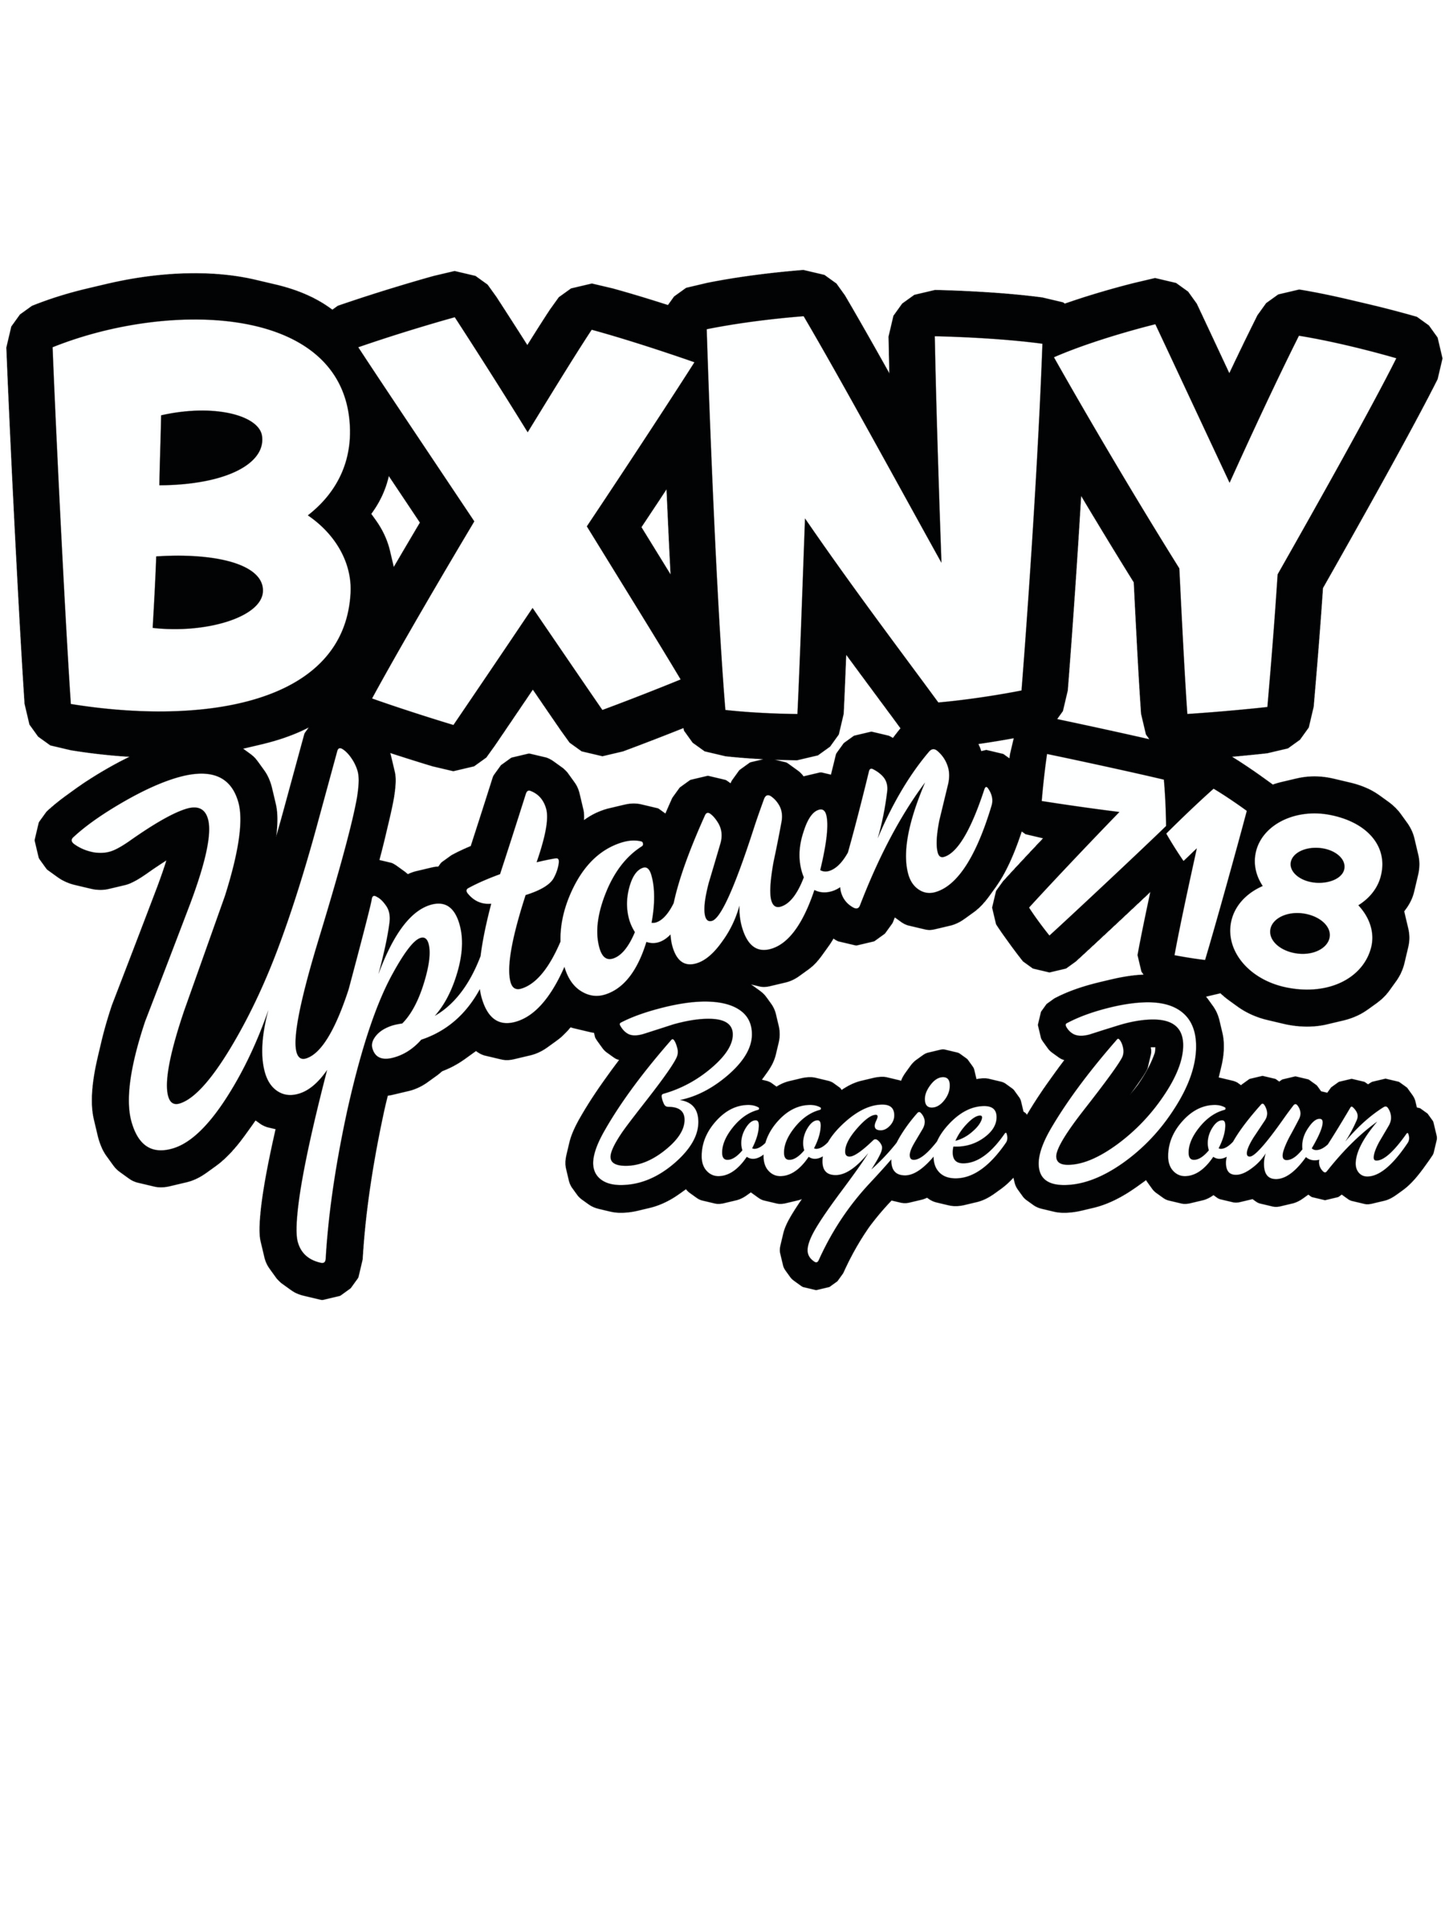 Uptown Boogie Down